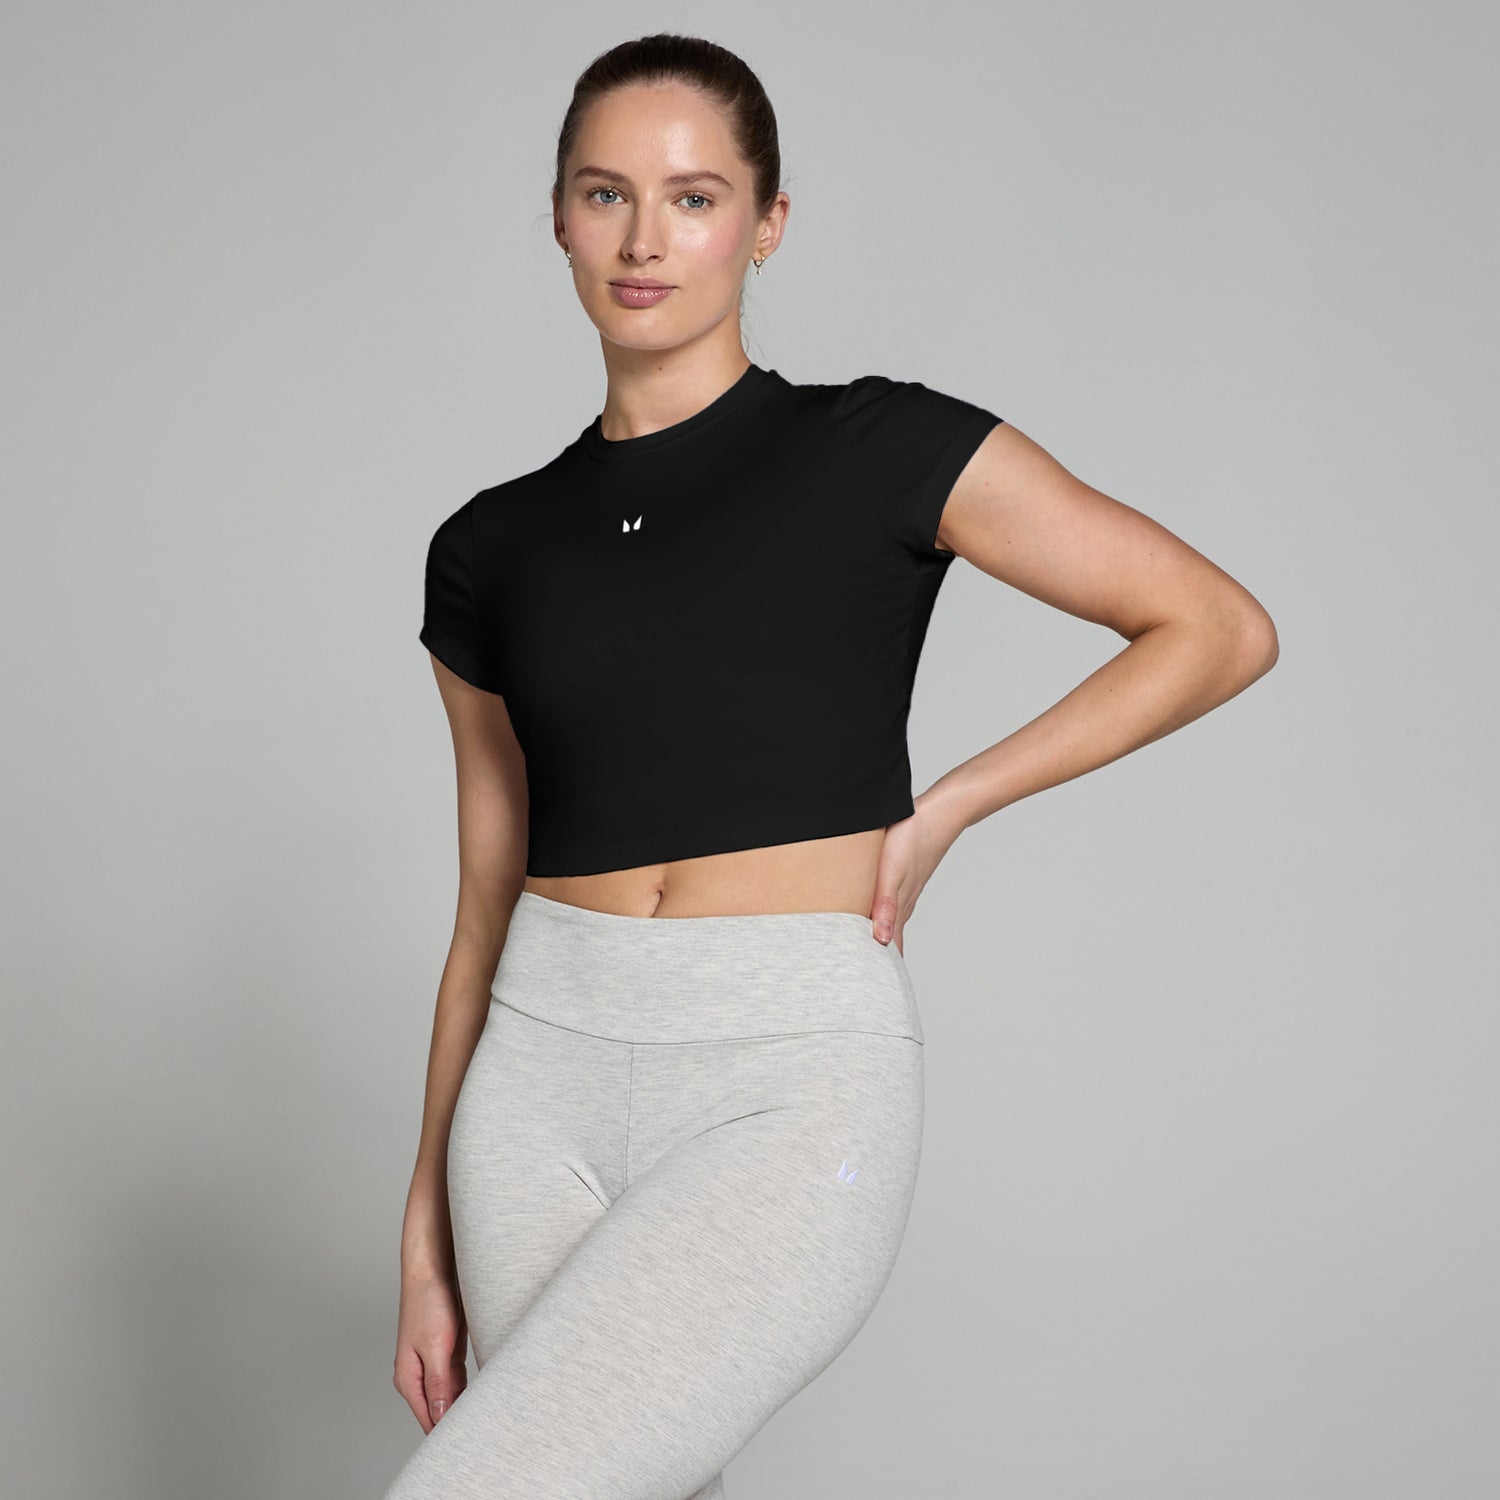 Женская укороченная облегающая футболка с короткими рукавами MP Basics — черный цвет - XXS